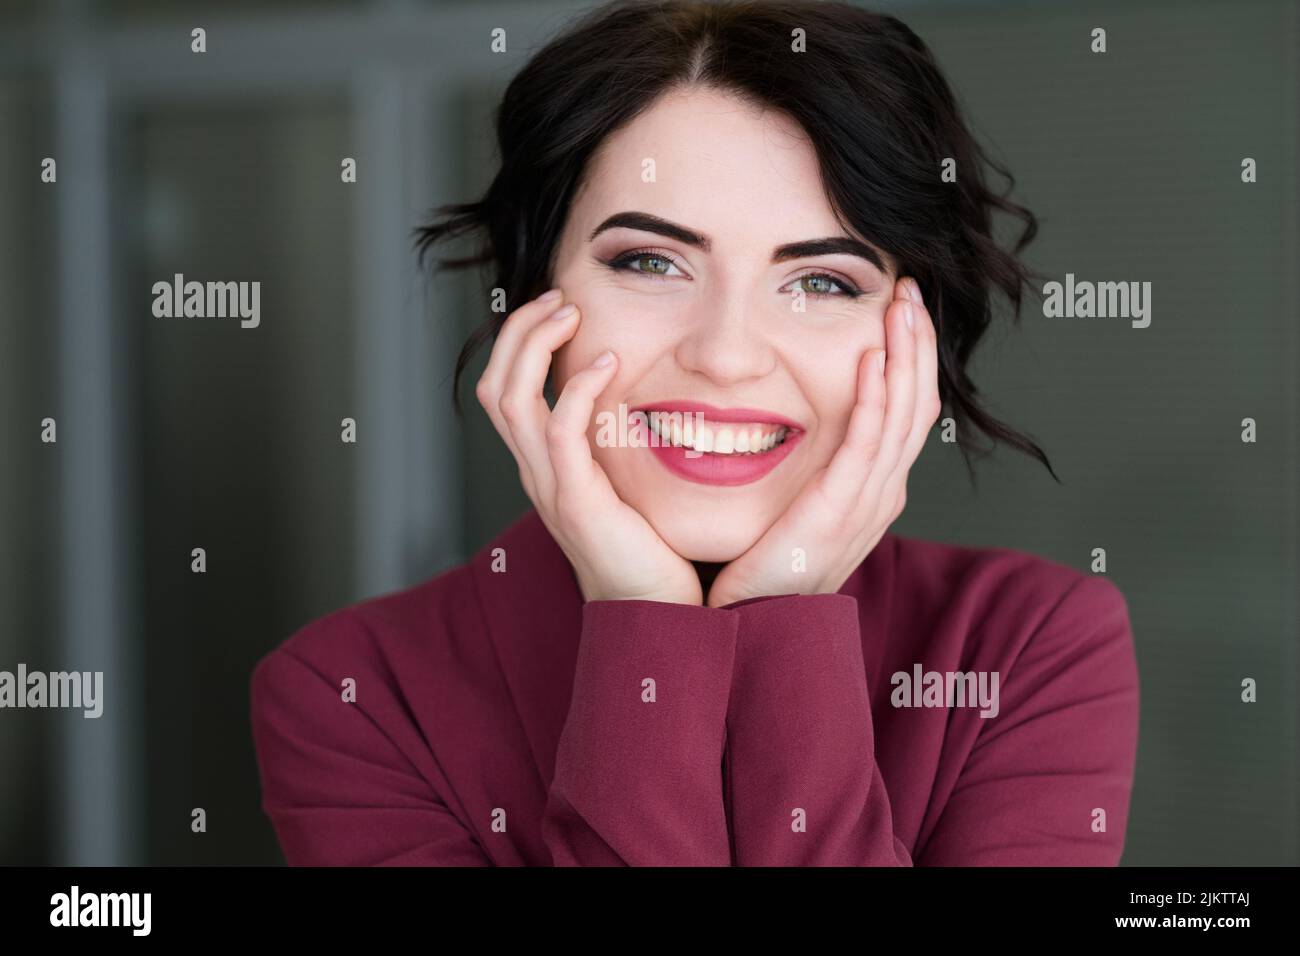 emotion face happy smiling joyful woman Stock Photo